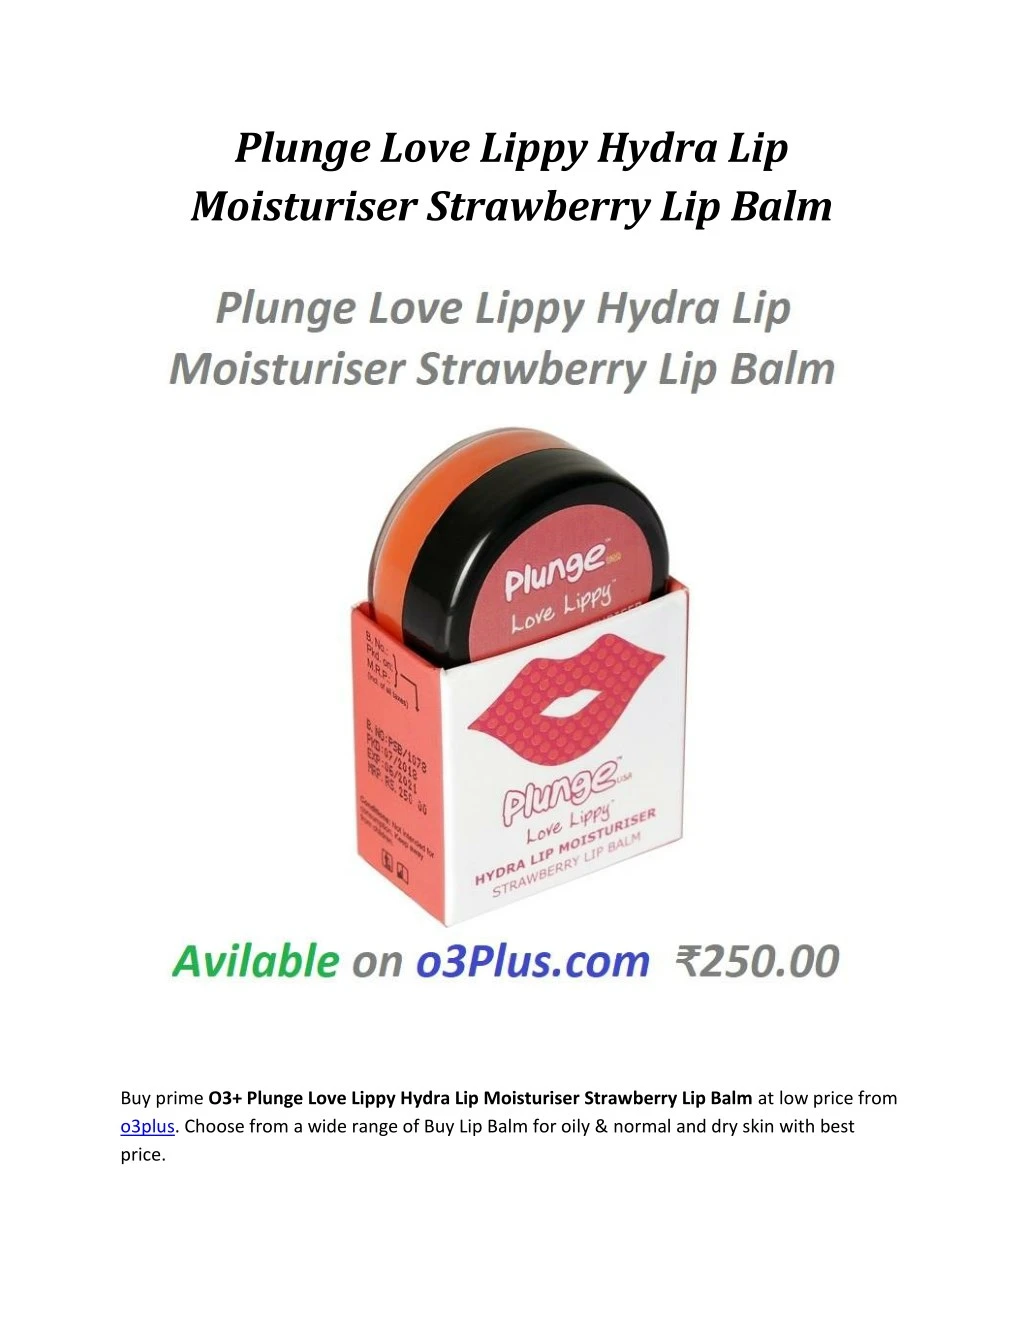 plunge love lippy hydra lip moisturiser